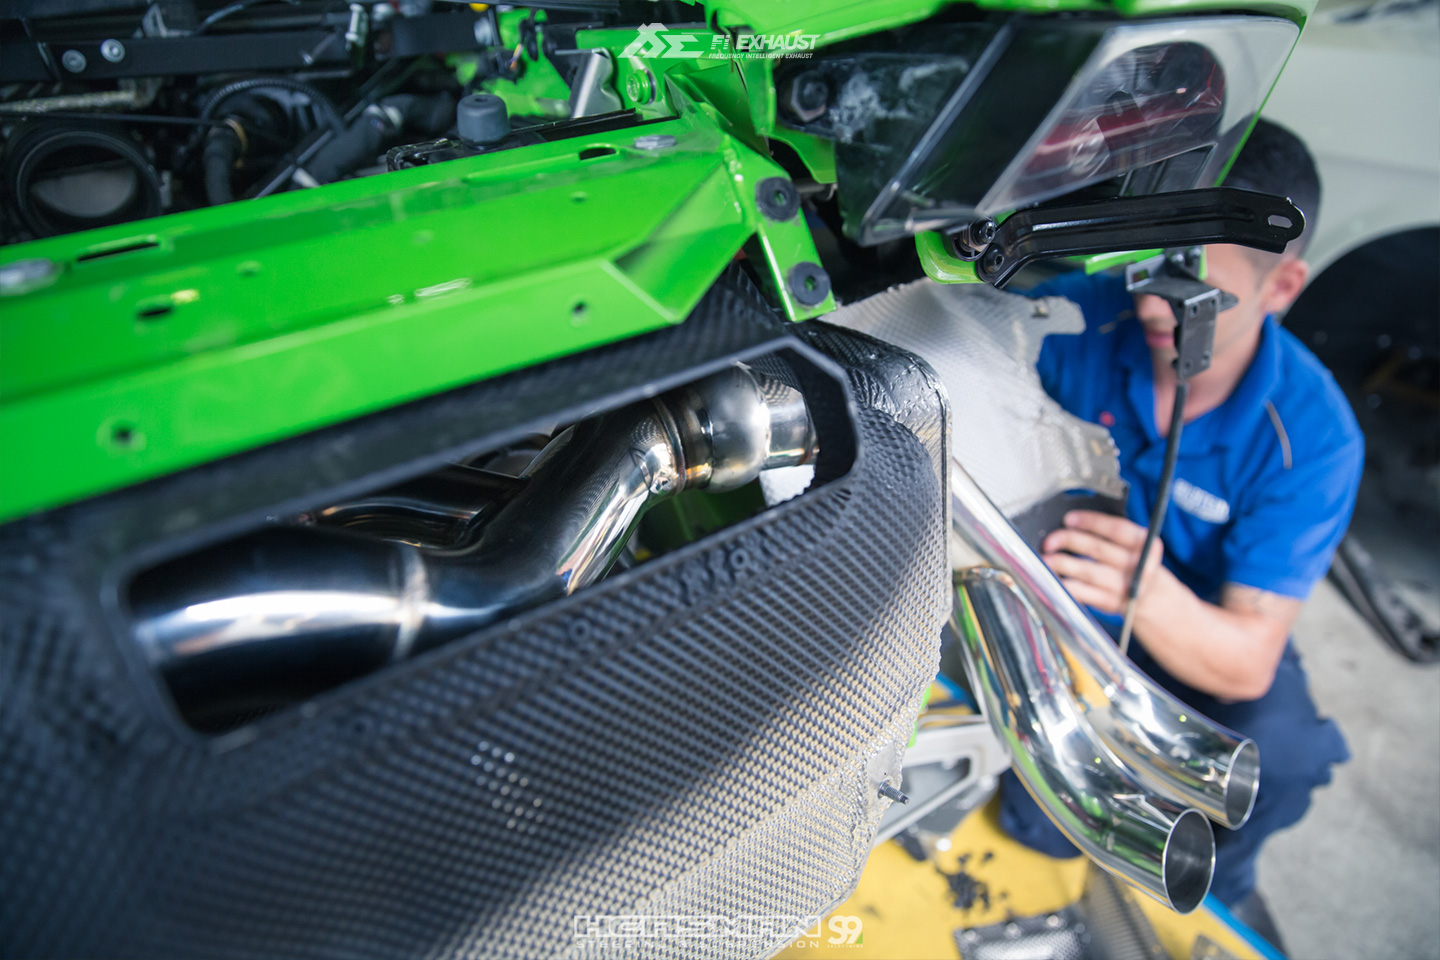 FI kipufogó Lamborghini Huracan LP 610-4 / LP 580-2 2014+ TITANIUM